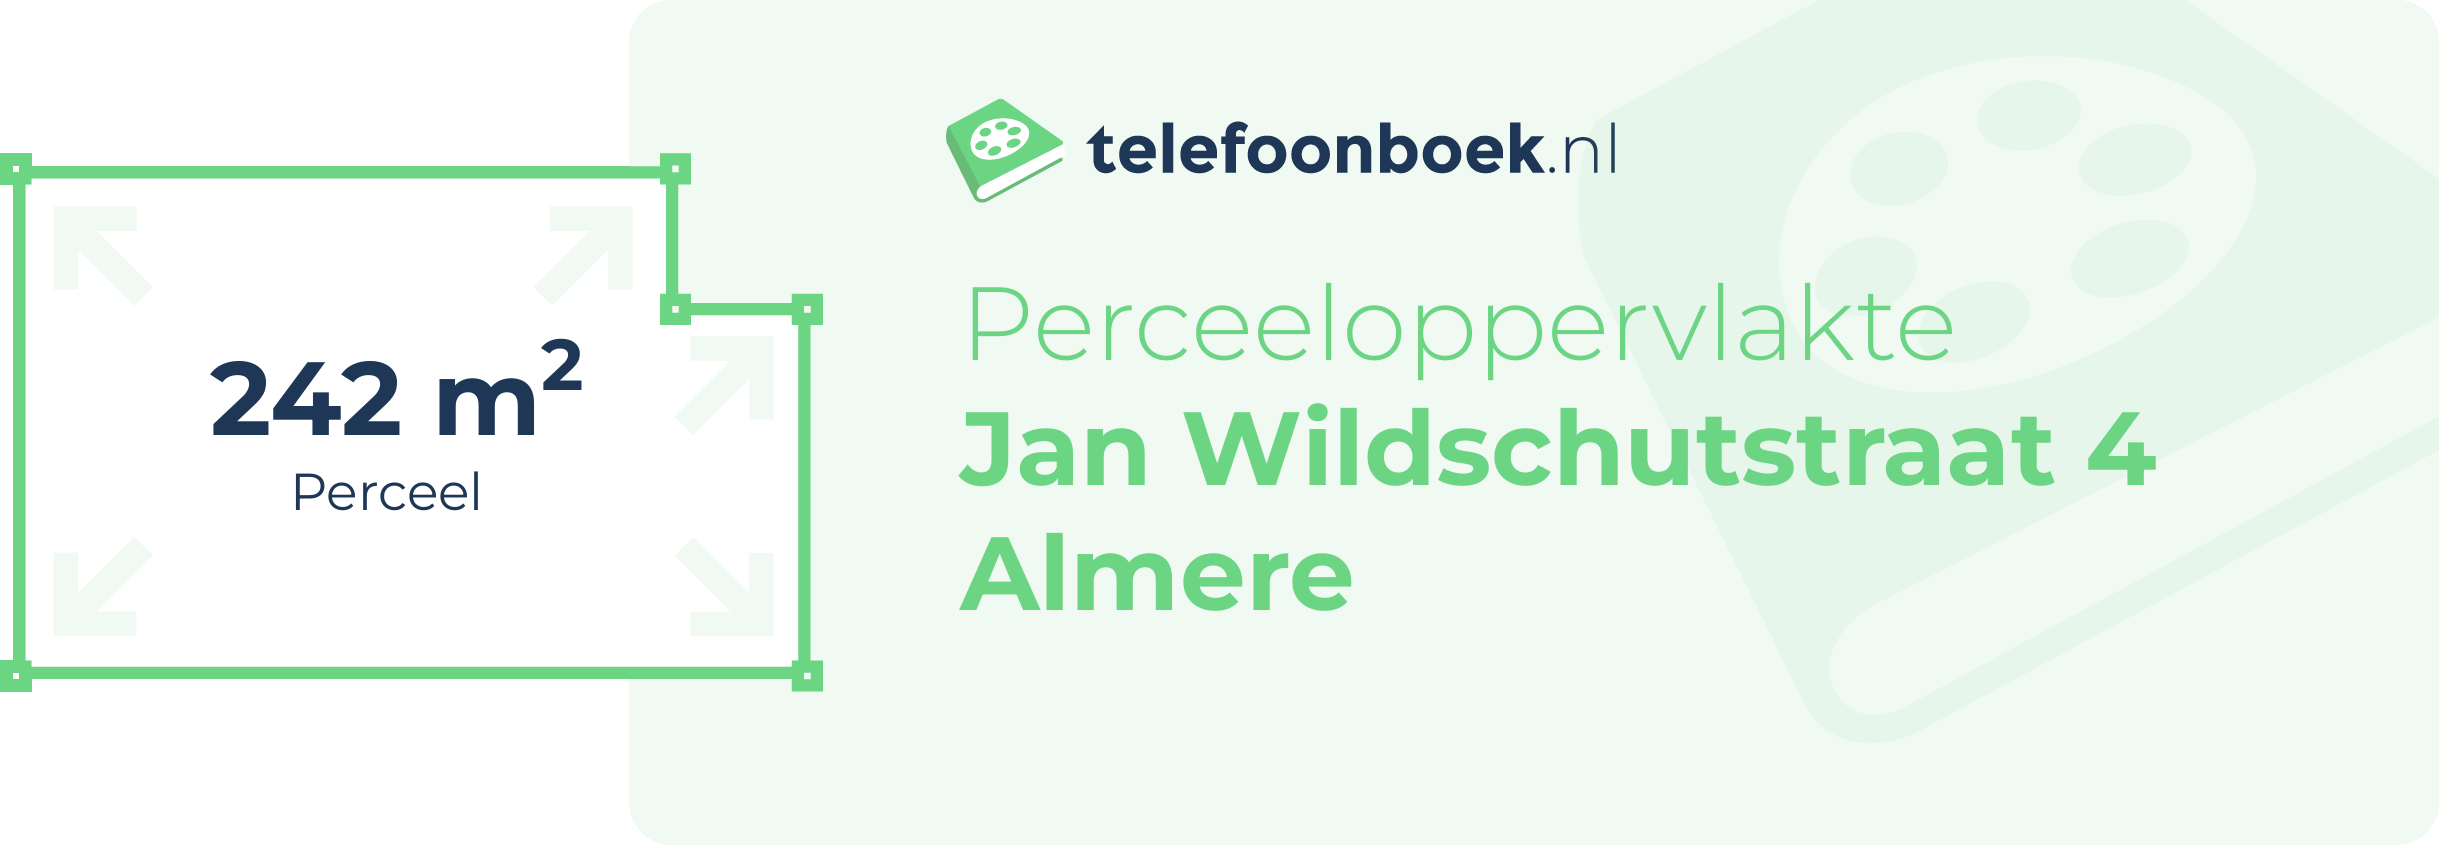 Perceeloppervlakte Jan Wildschutstraat 4 Almere